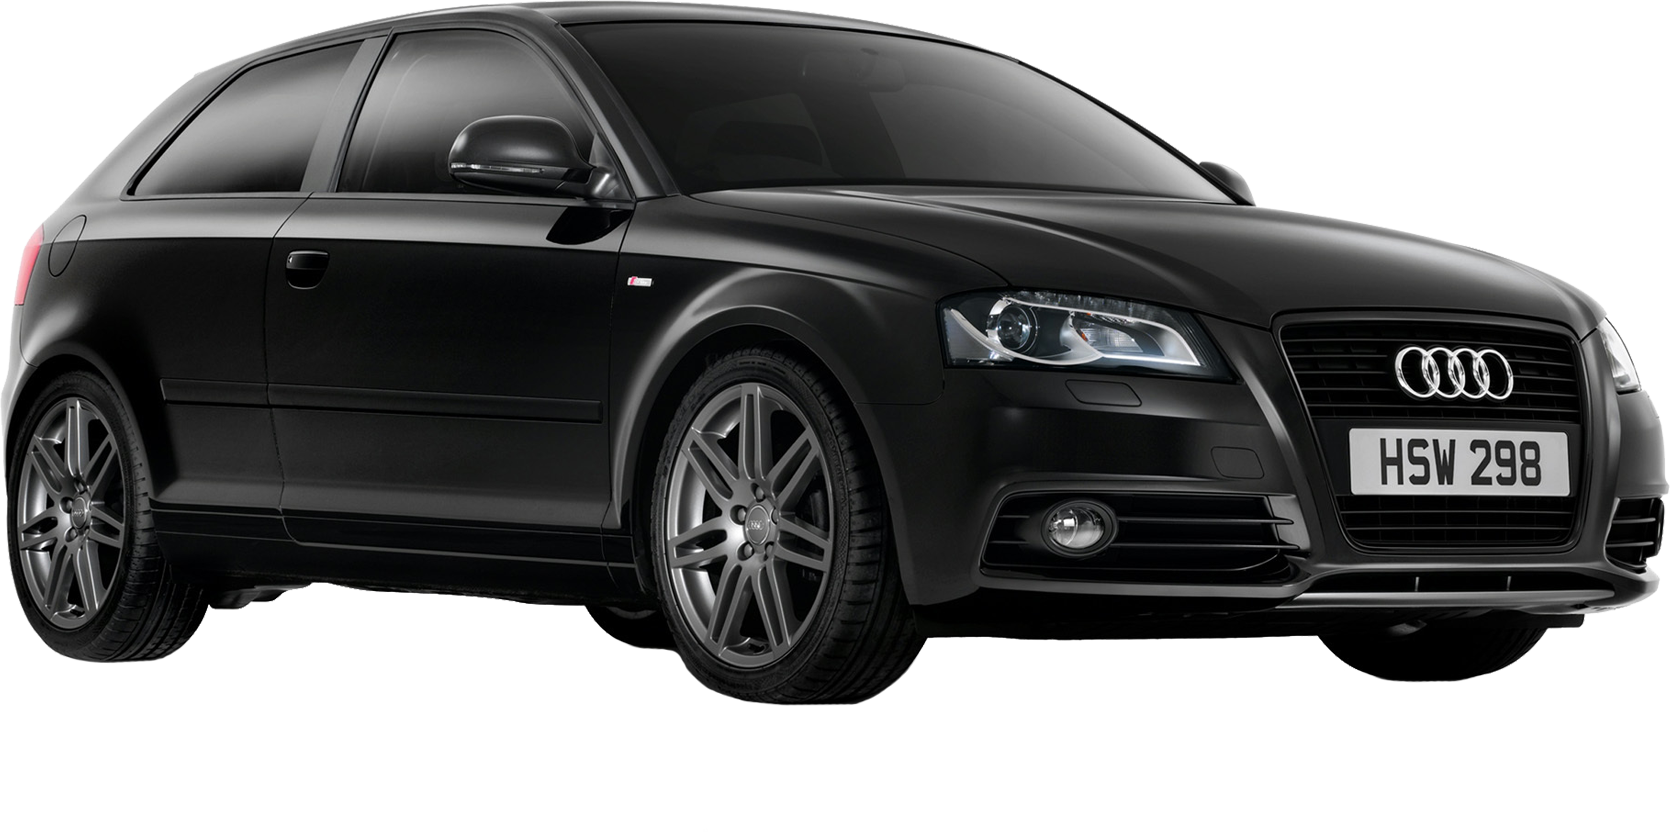 Transparenter Hintergrund des schwarzen Audi-Autos